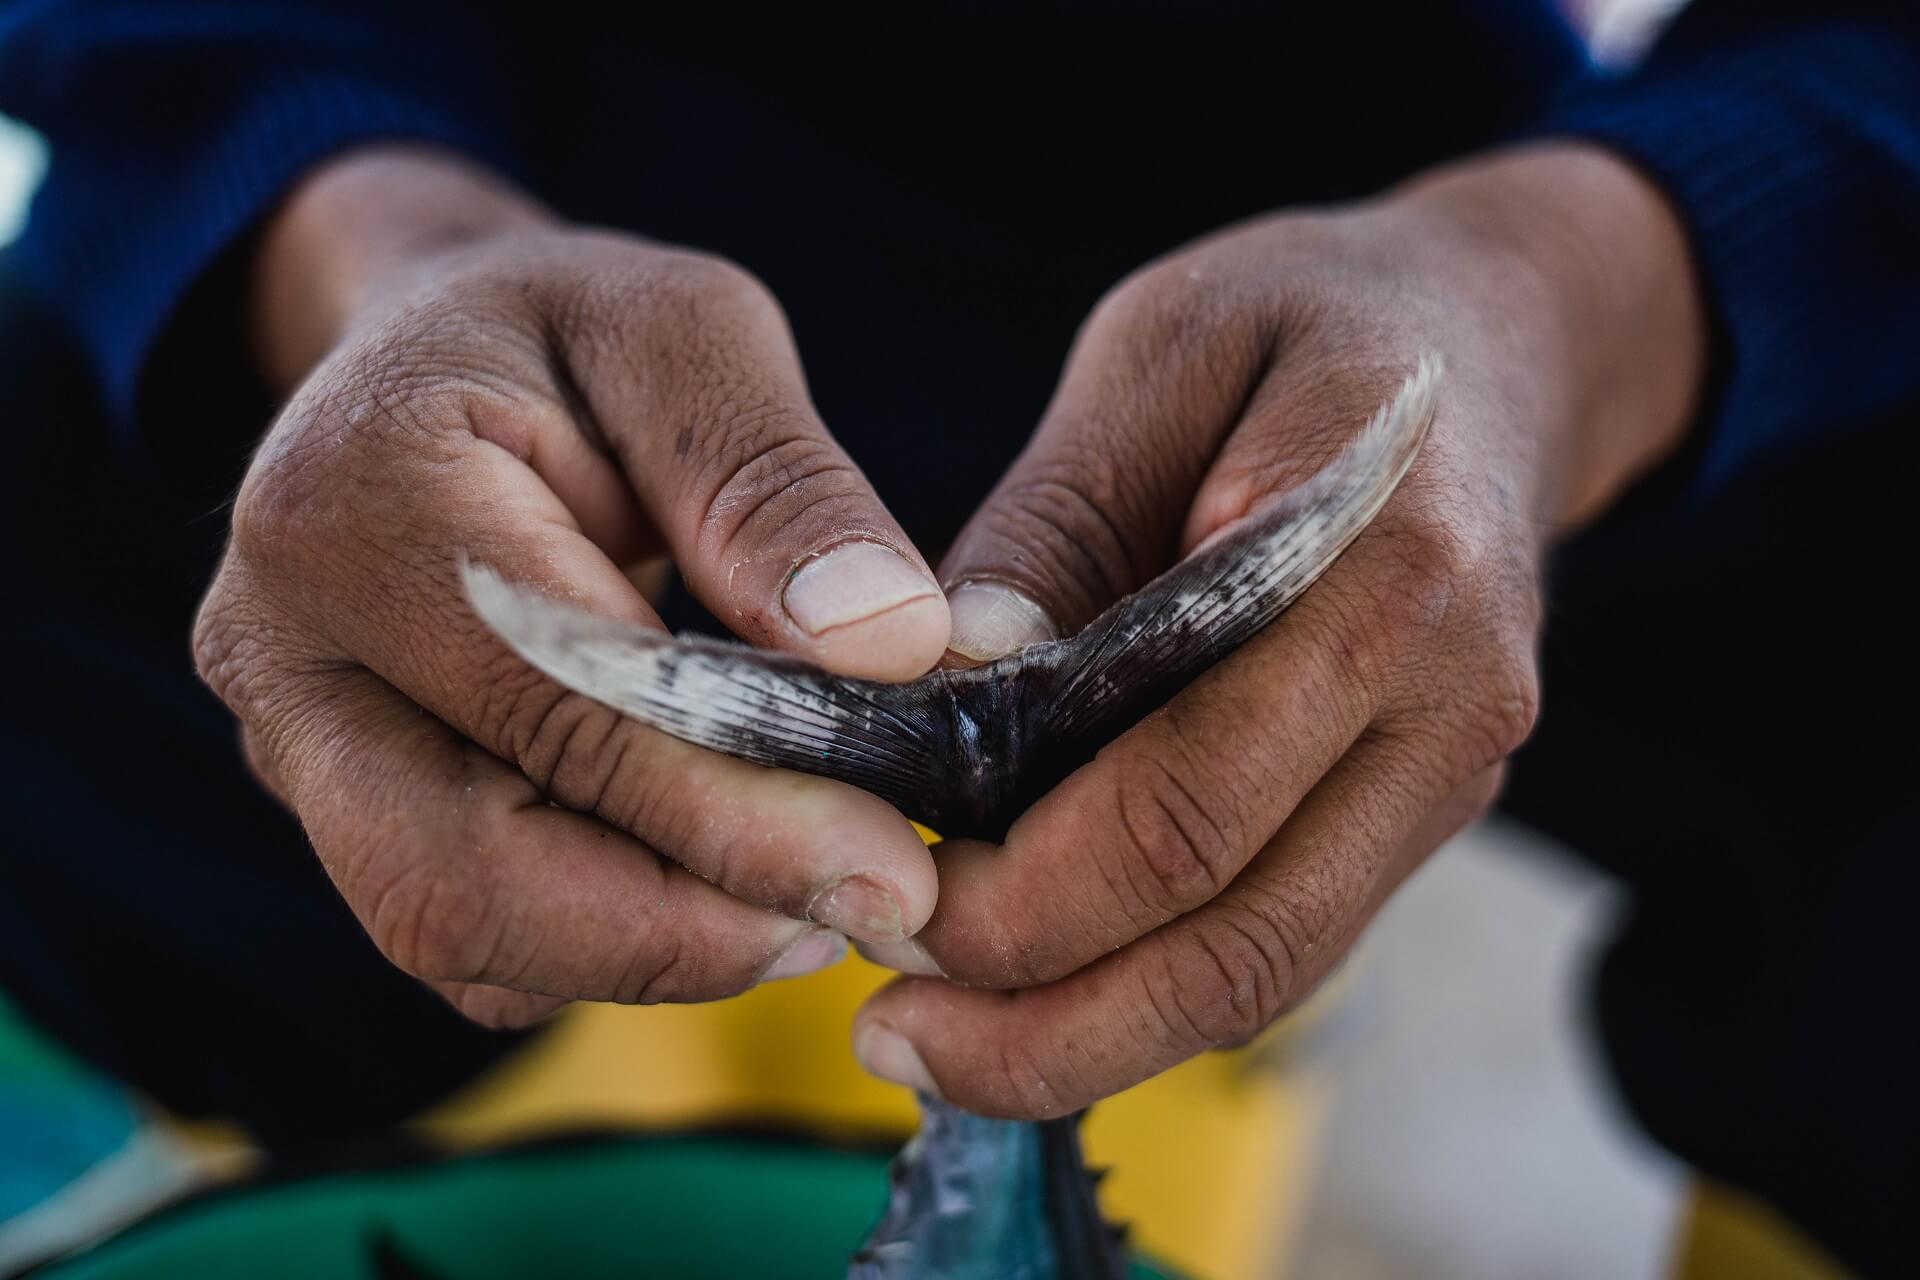 La pesca artesanal debe valorarse y protegerse para la sostenibilidad de nuestros océanos